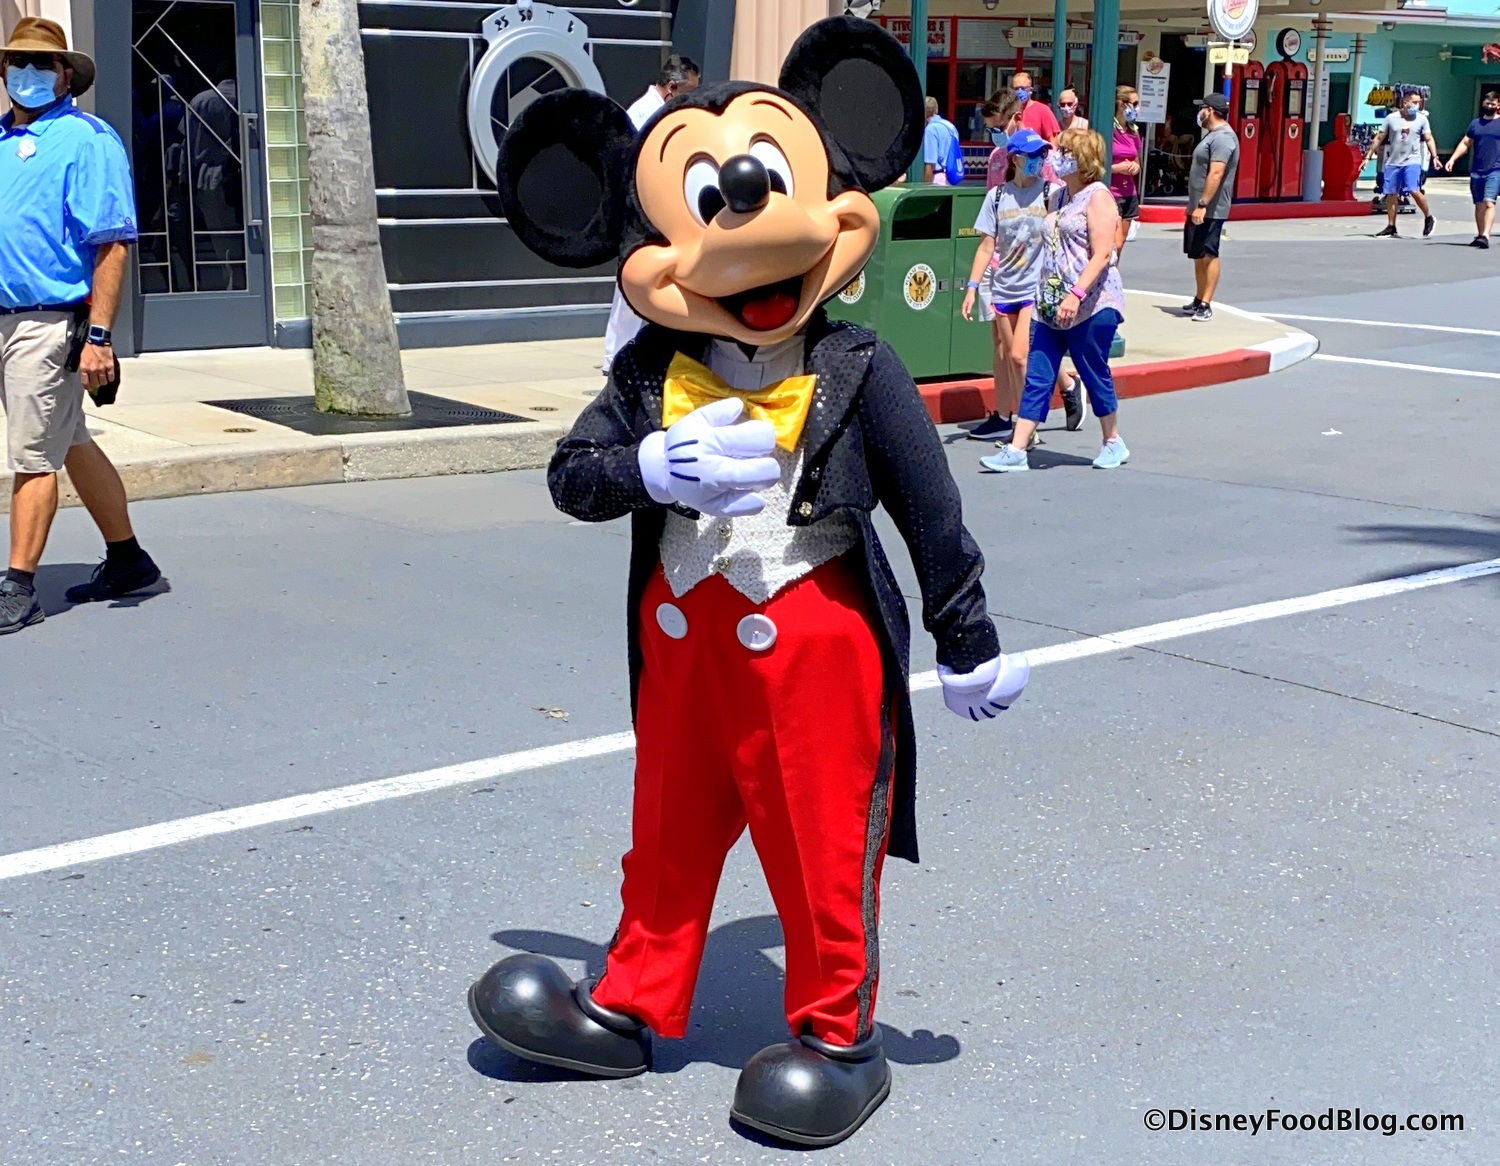 Disney fantasy Funny Goofy with MIckey mouse dress